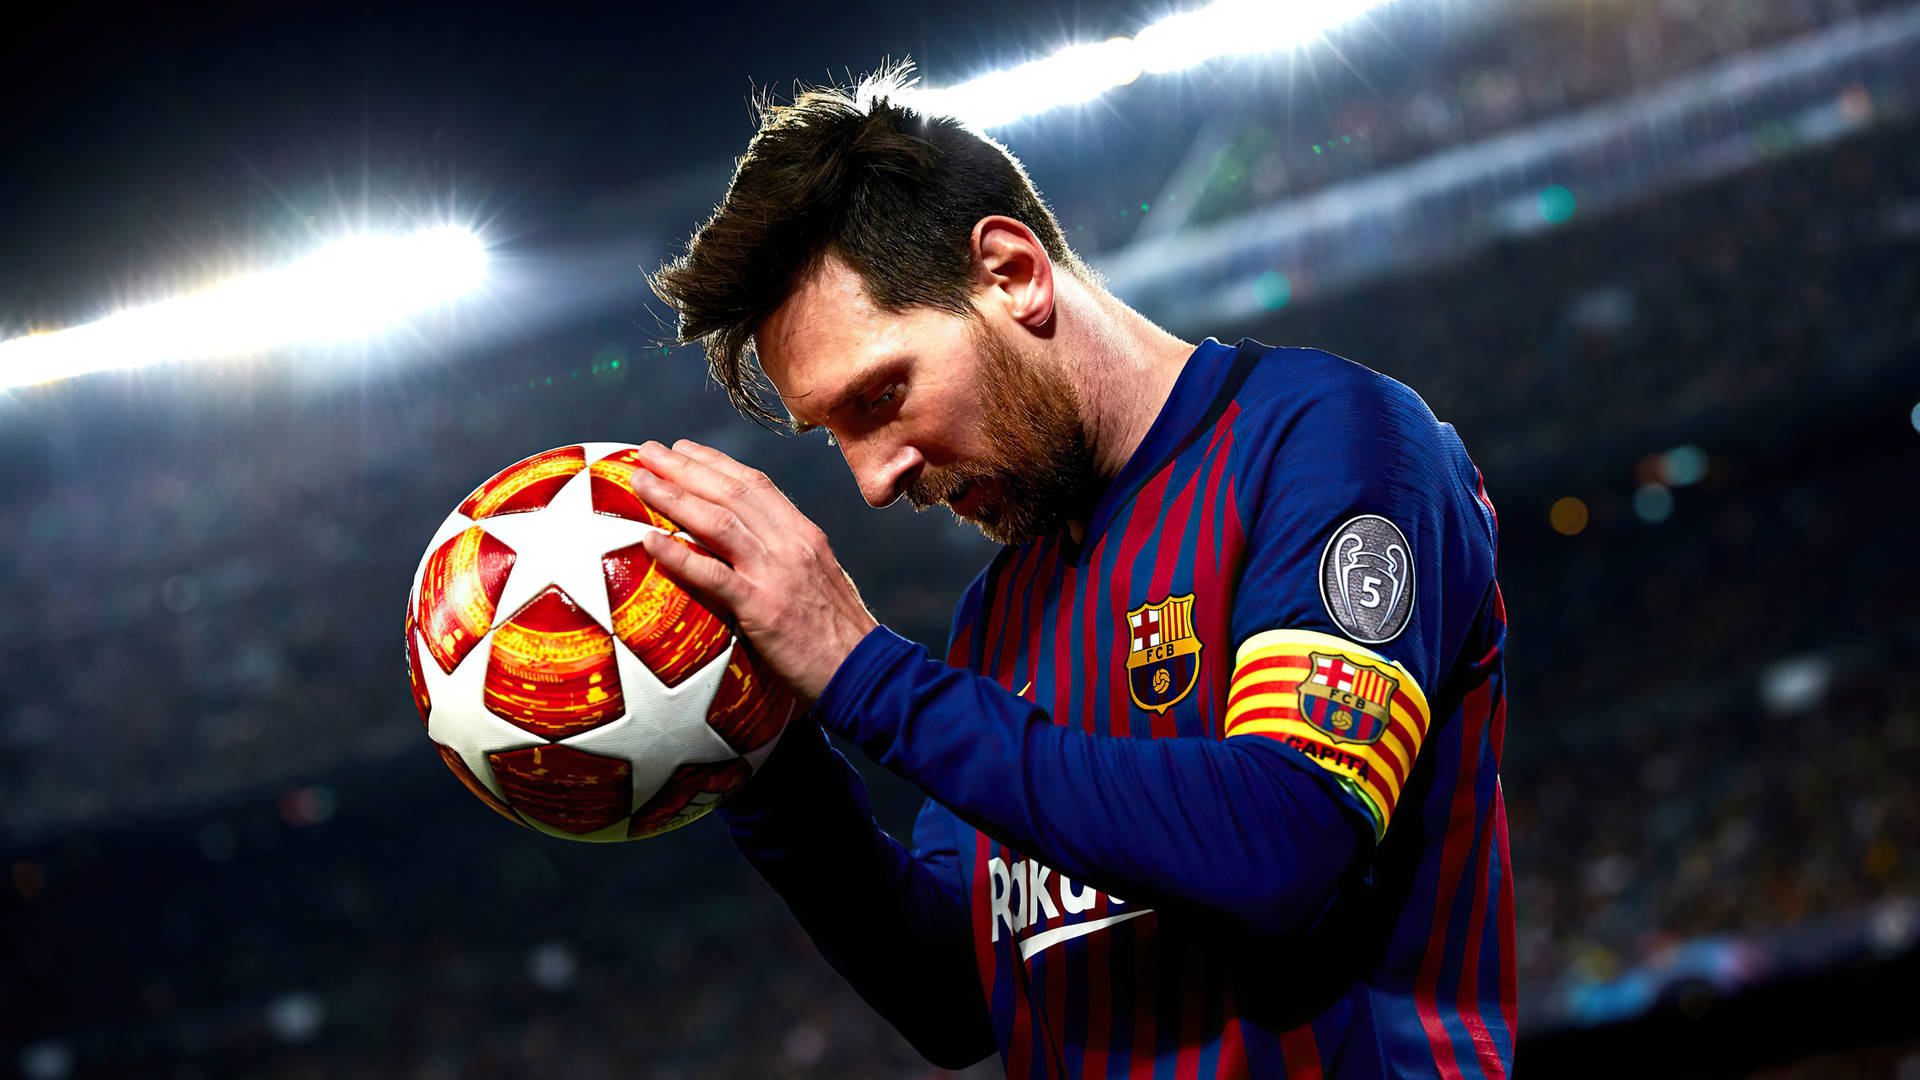 Head Bowed Messi 4k Ultra Hd Wallpaper